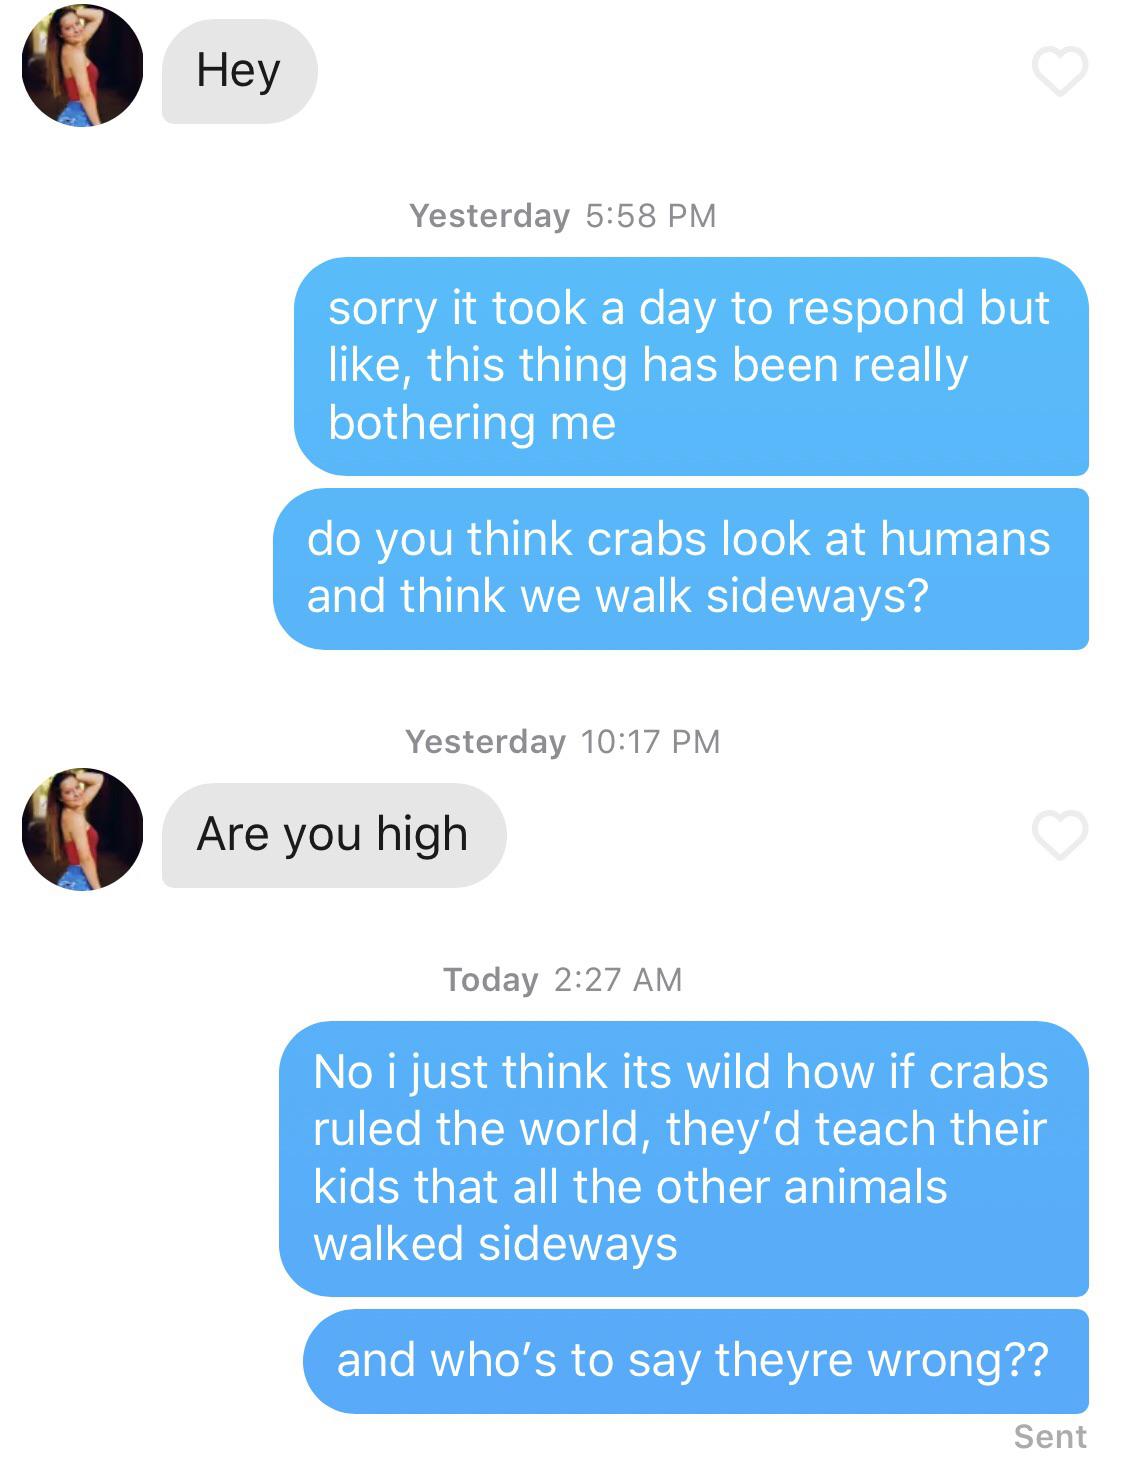 A Crab's life.